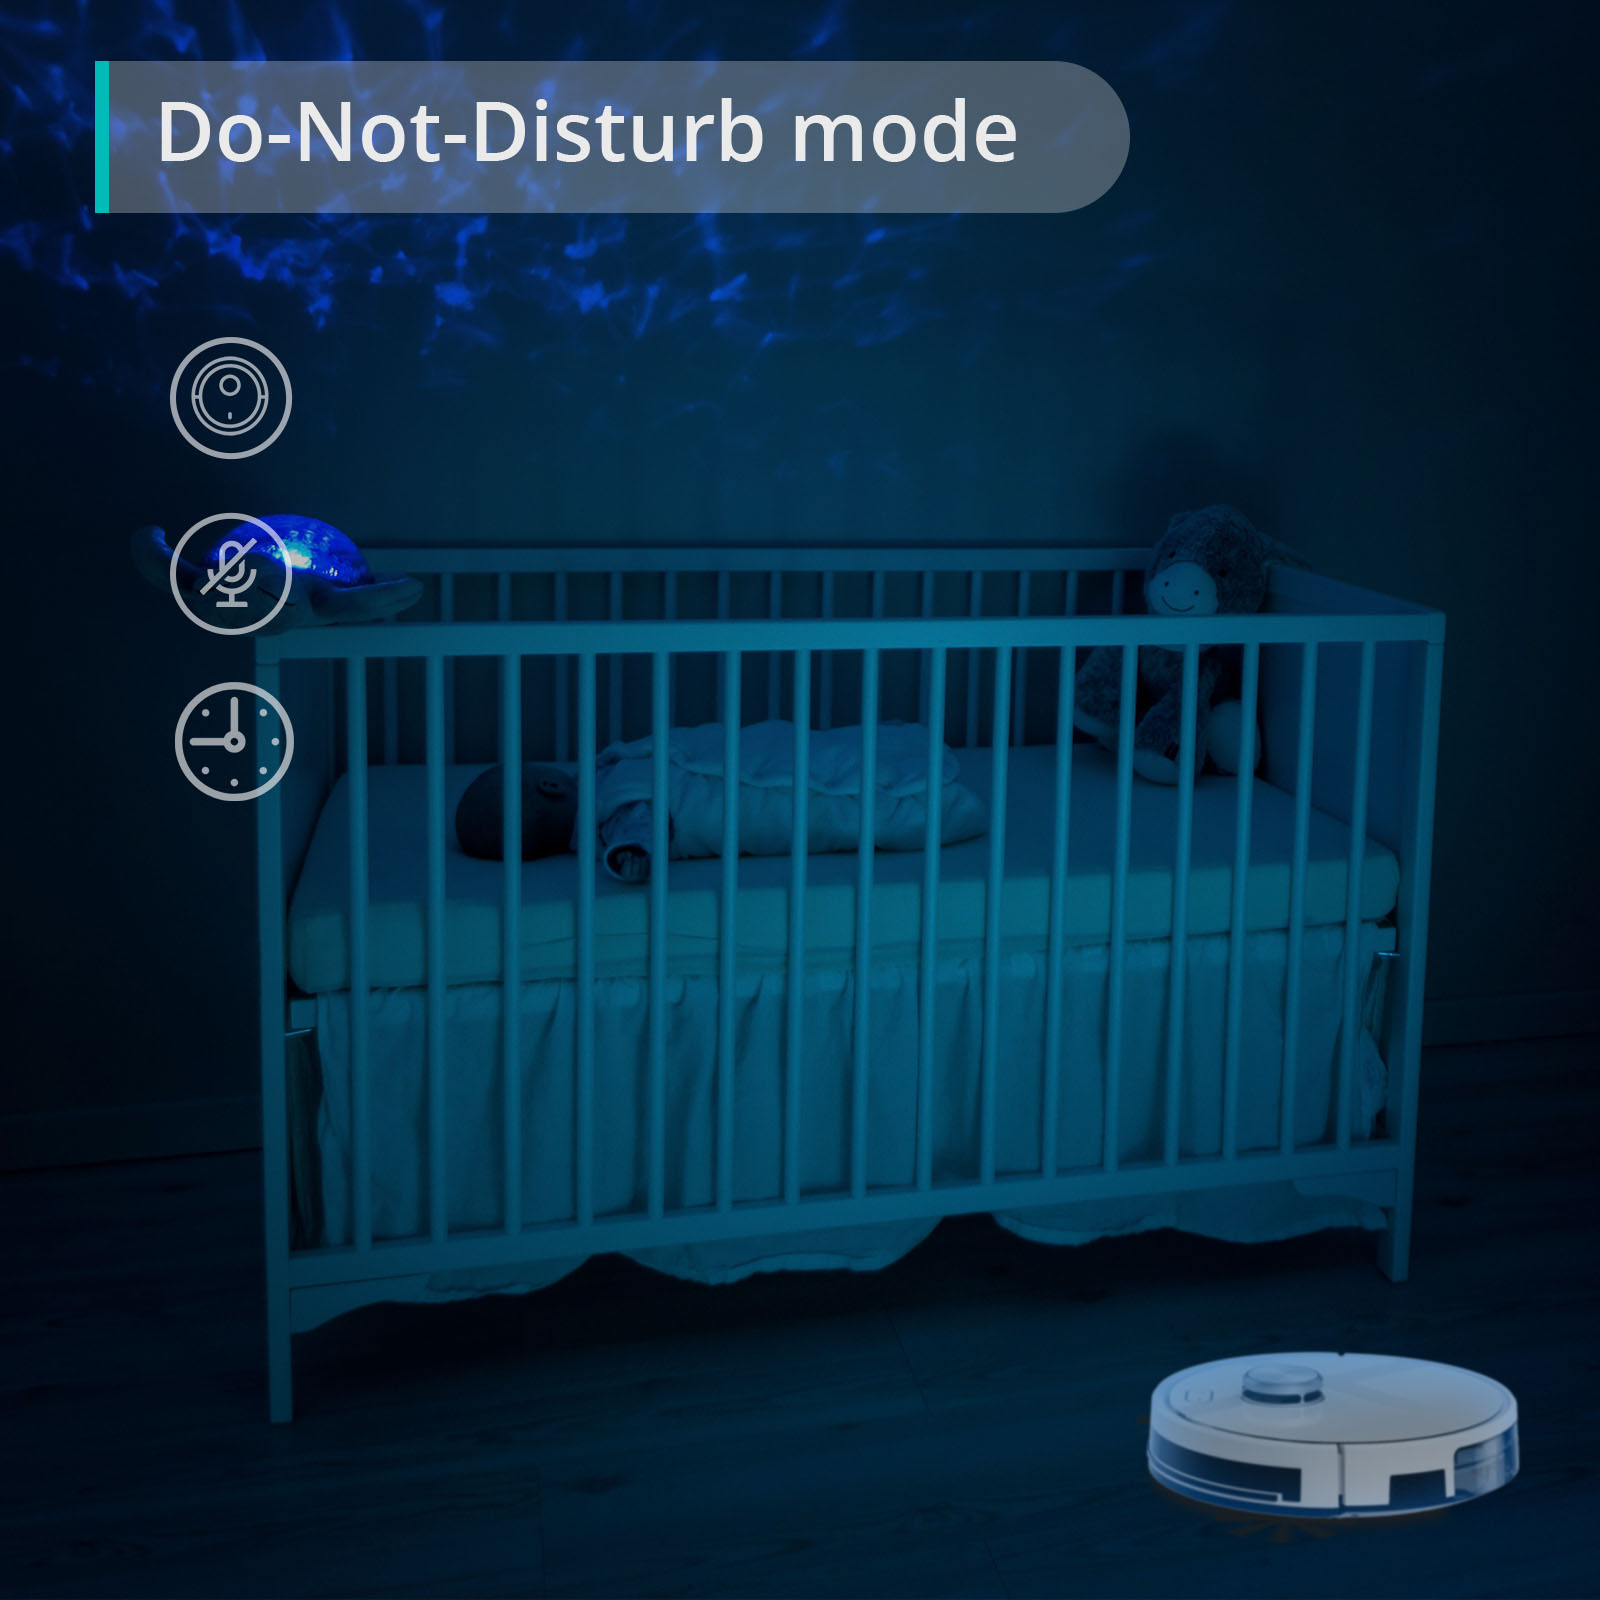 Do-Not-Disturb mode